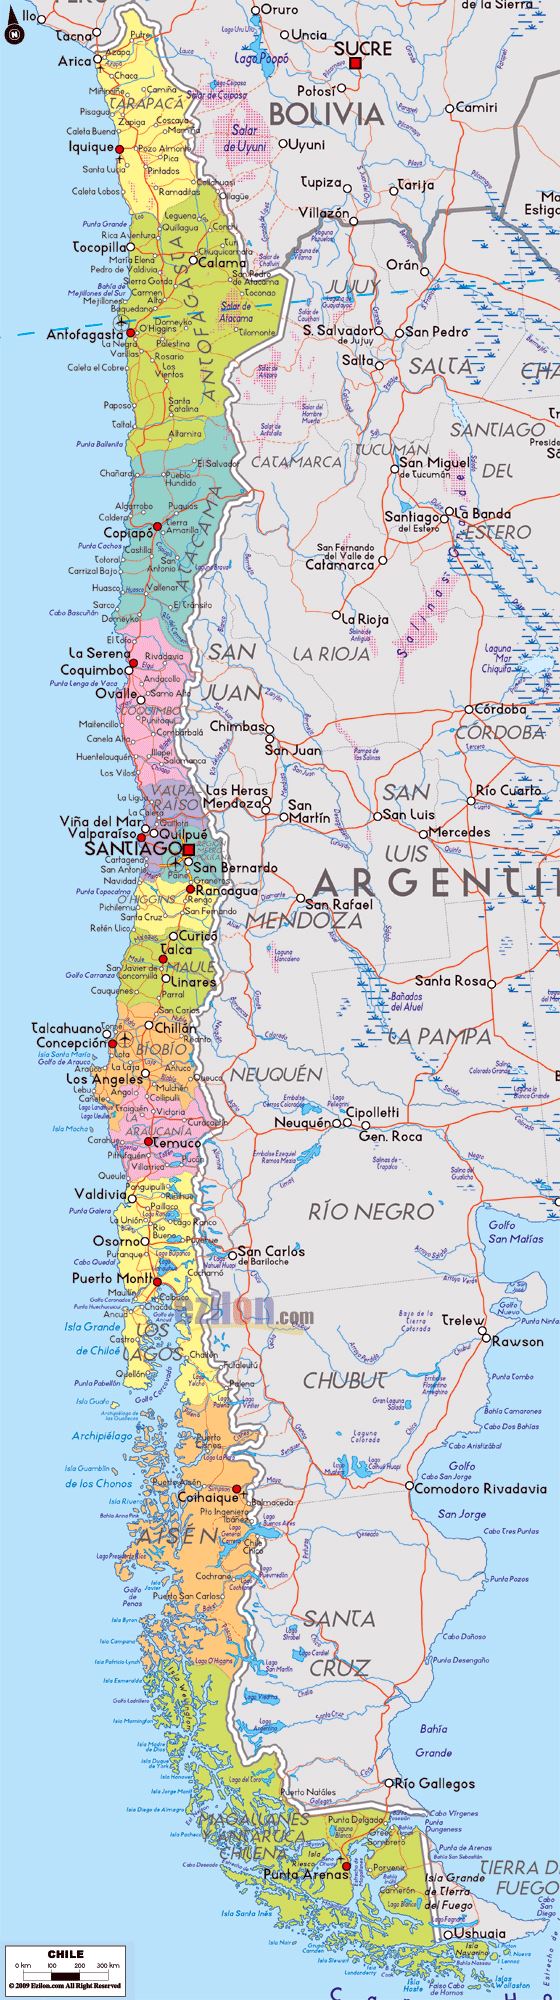 Detallado mapa político y administrativo de Chile con carreteras, ciudades y aeropuertos